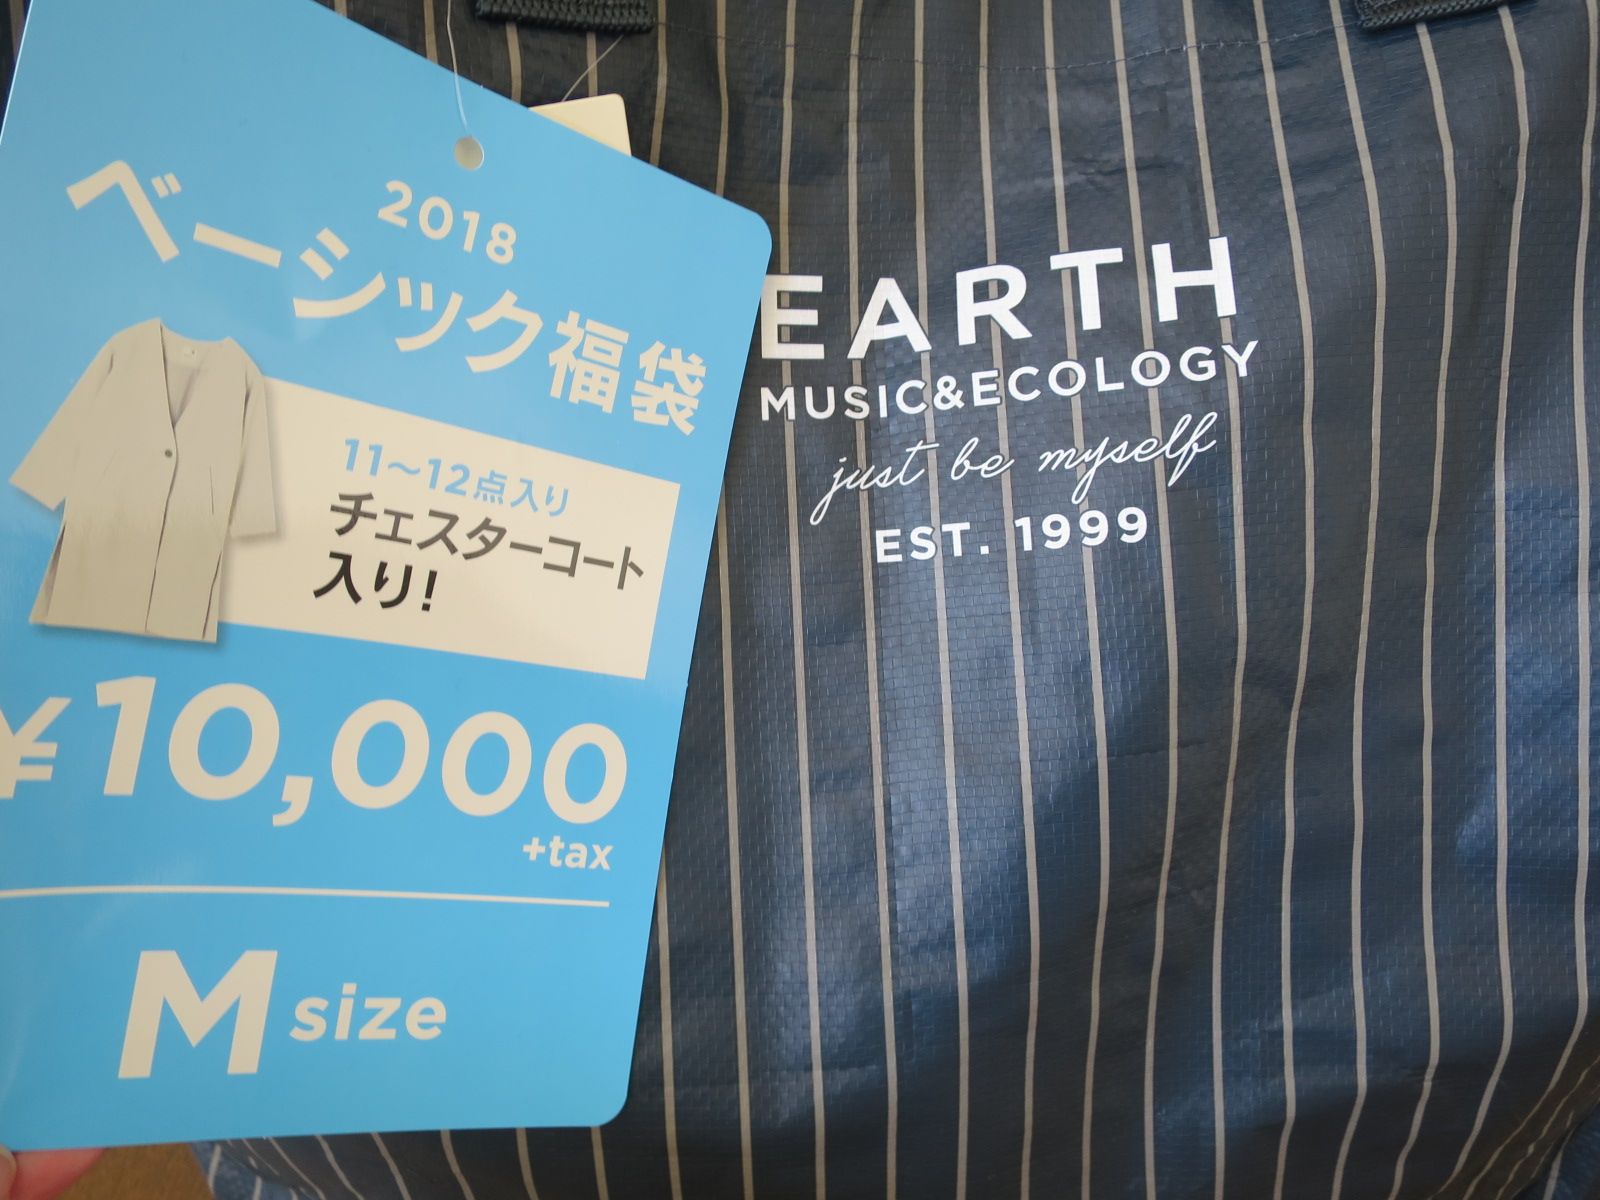 福袋18 ベーシック 購入 ネタバレ中身開封 Earth Music Ecology アースミュージック エコロジー オリオン座のブログ 楽天ブログ